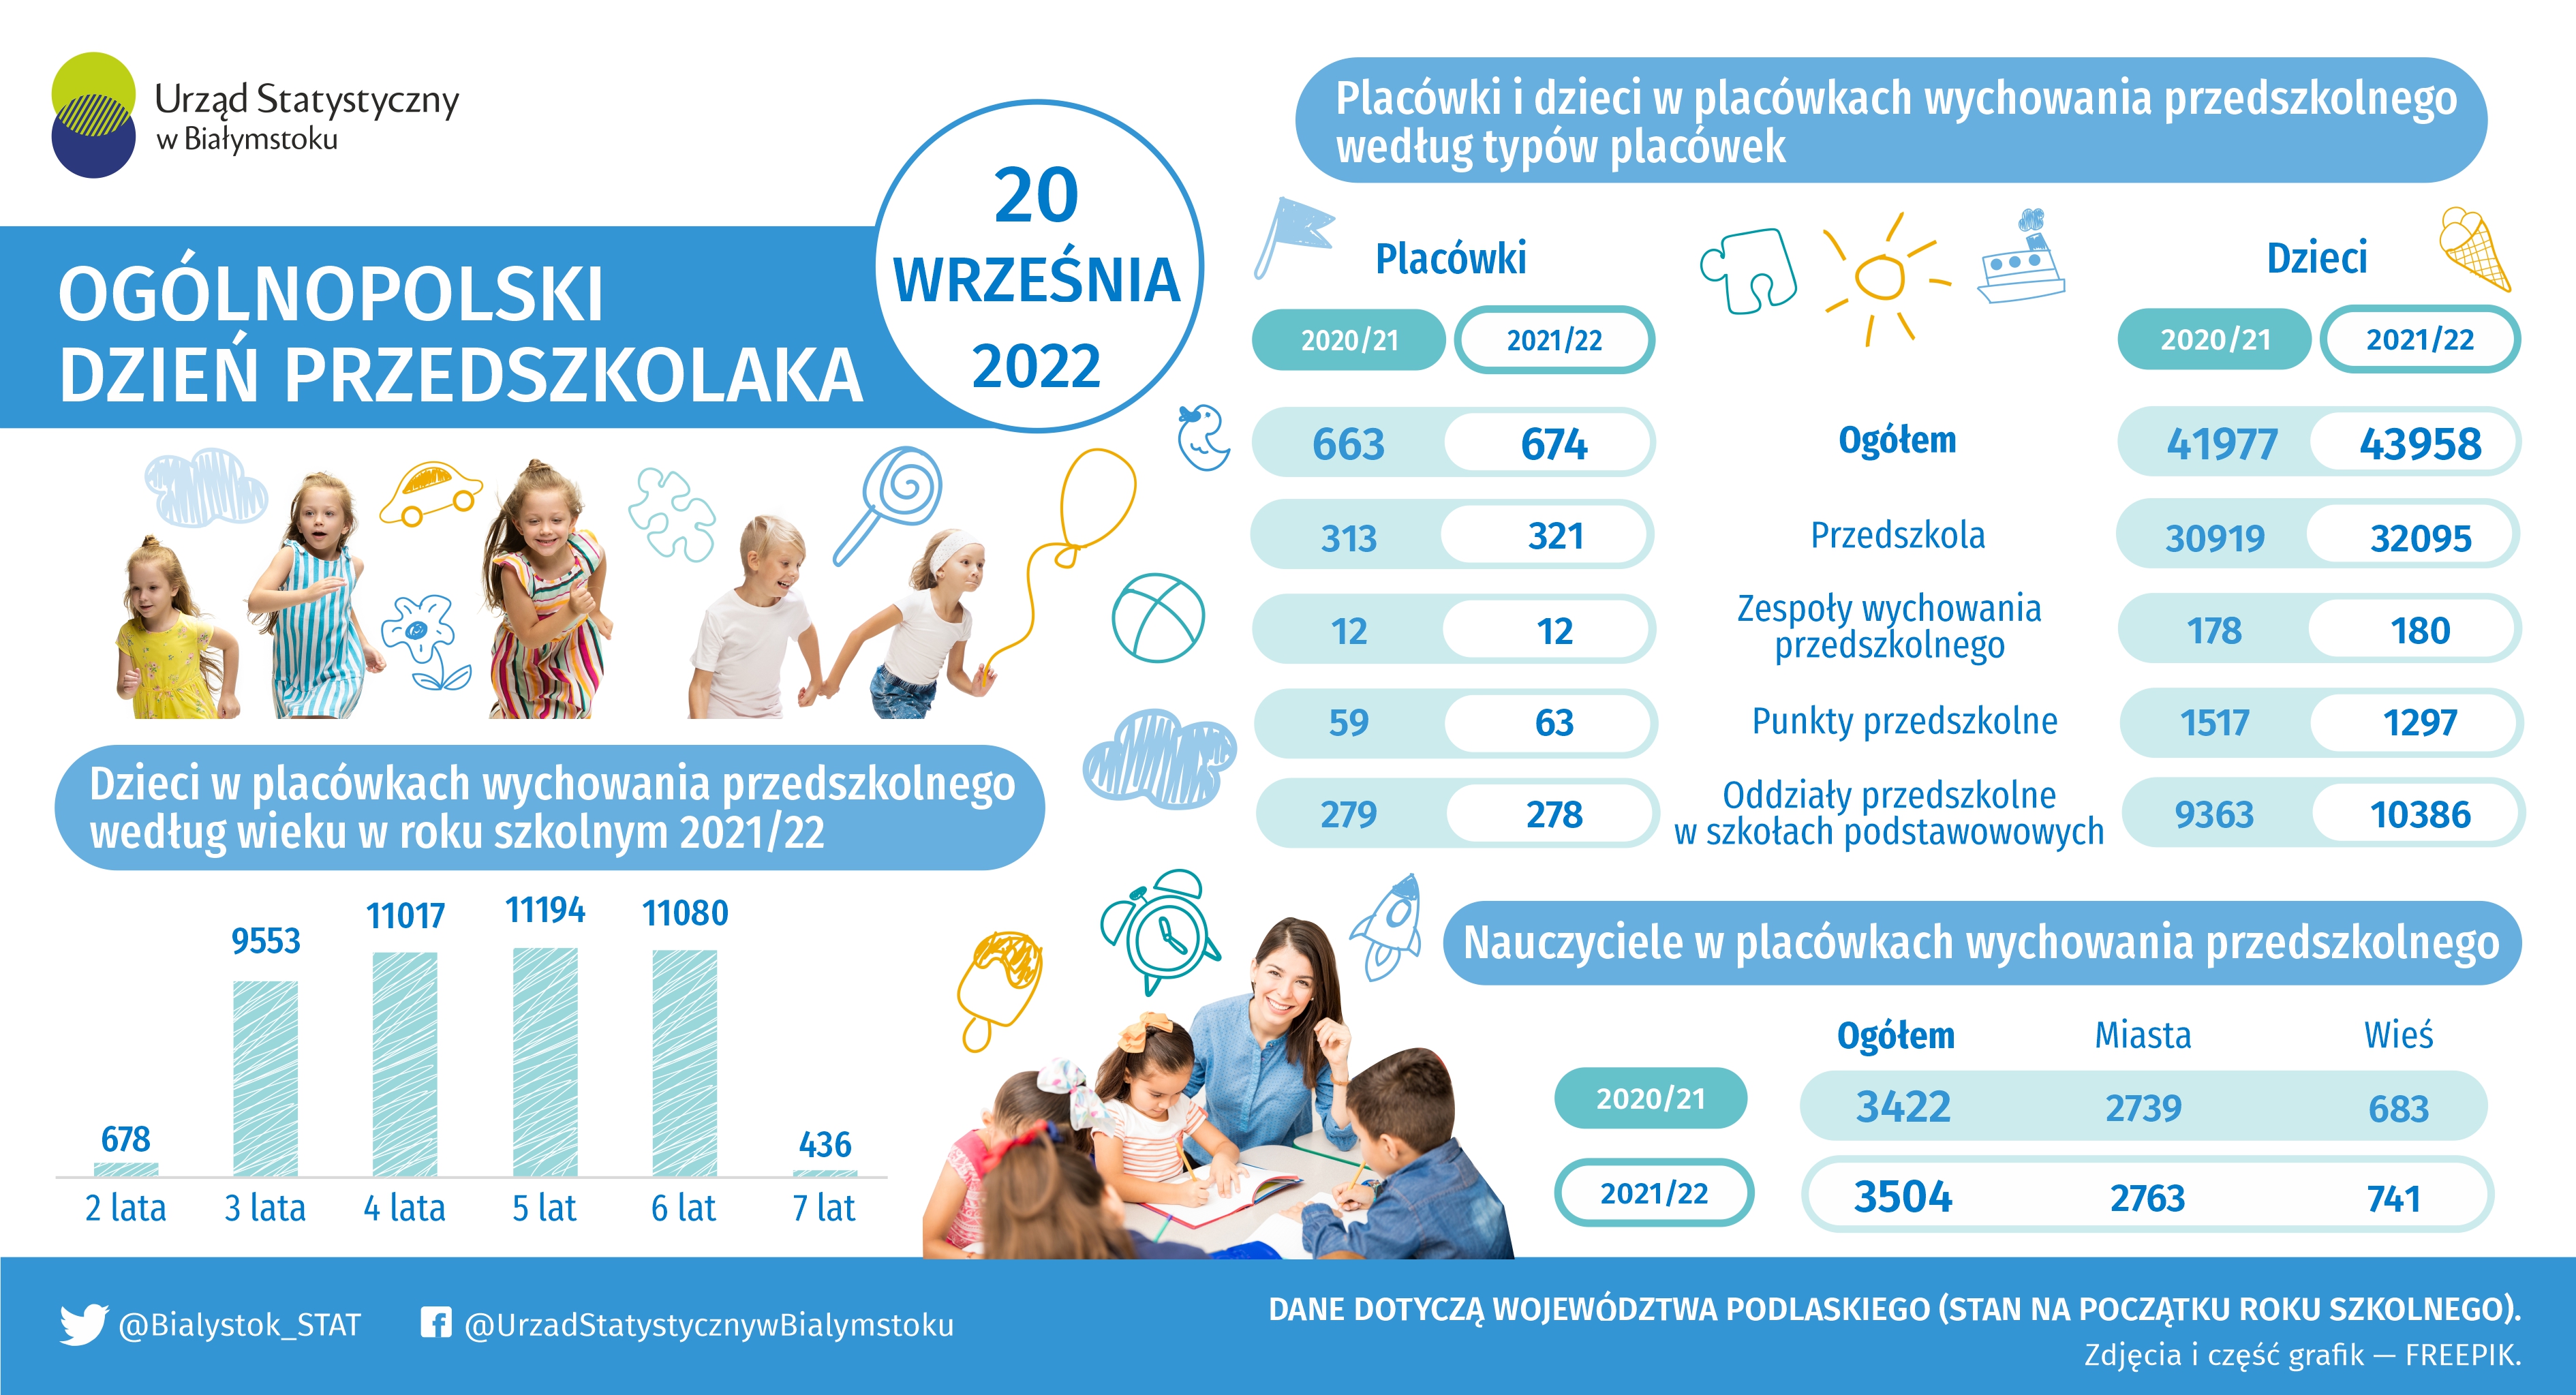 Infografika - Ogólnopolski Dzień Przedszkolaka - 20 września 